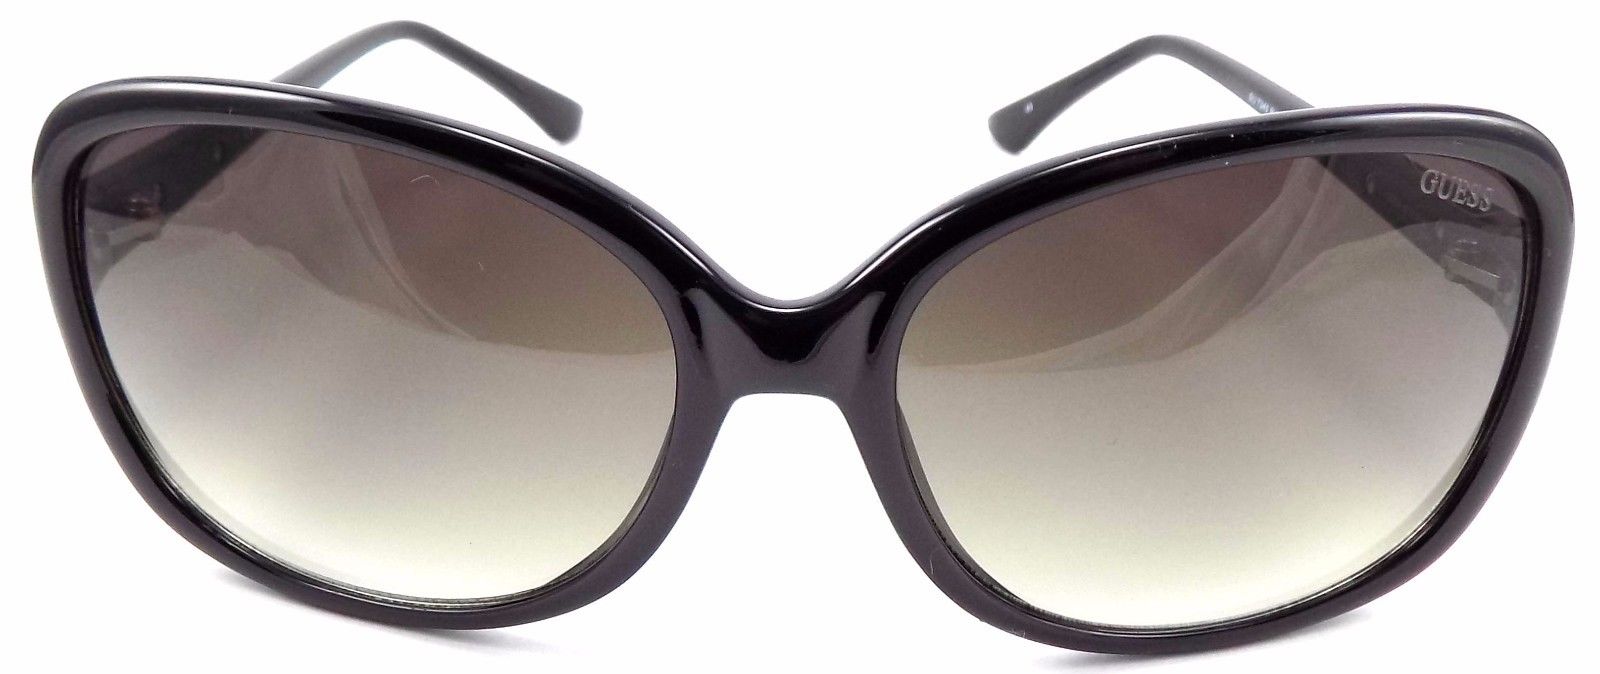 2-GUESS GU7345 BLK-35 Women's Sunglasses 61-17-135 Black Frame / Brown Gradient-715583640405-IKSpecs